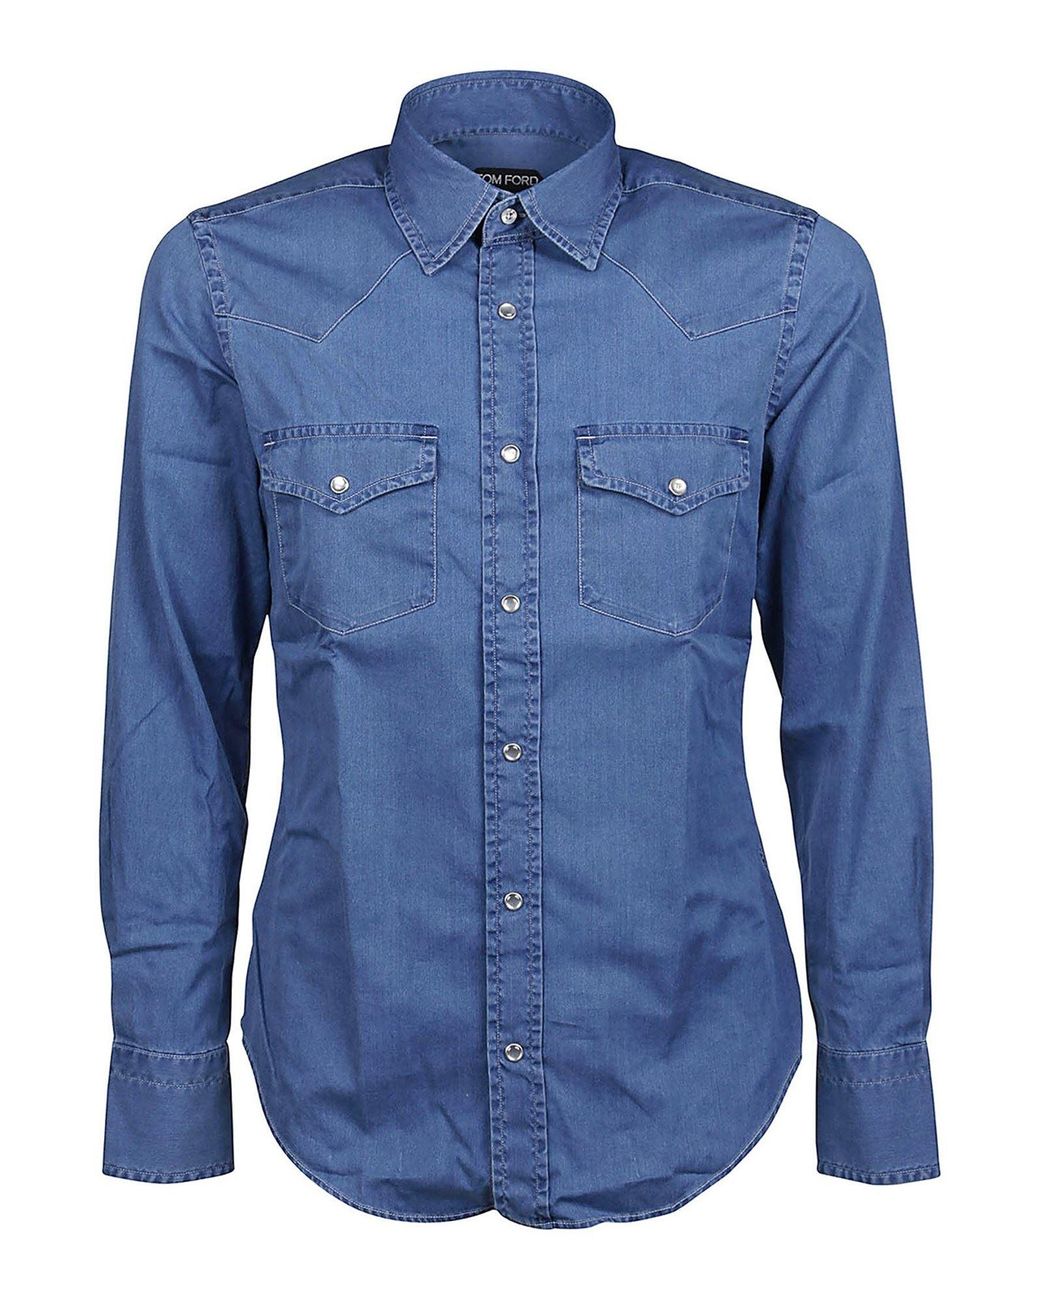 Tom Ford Denim Shirt in Blue for Men - Lyst